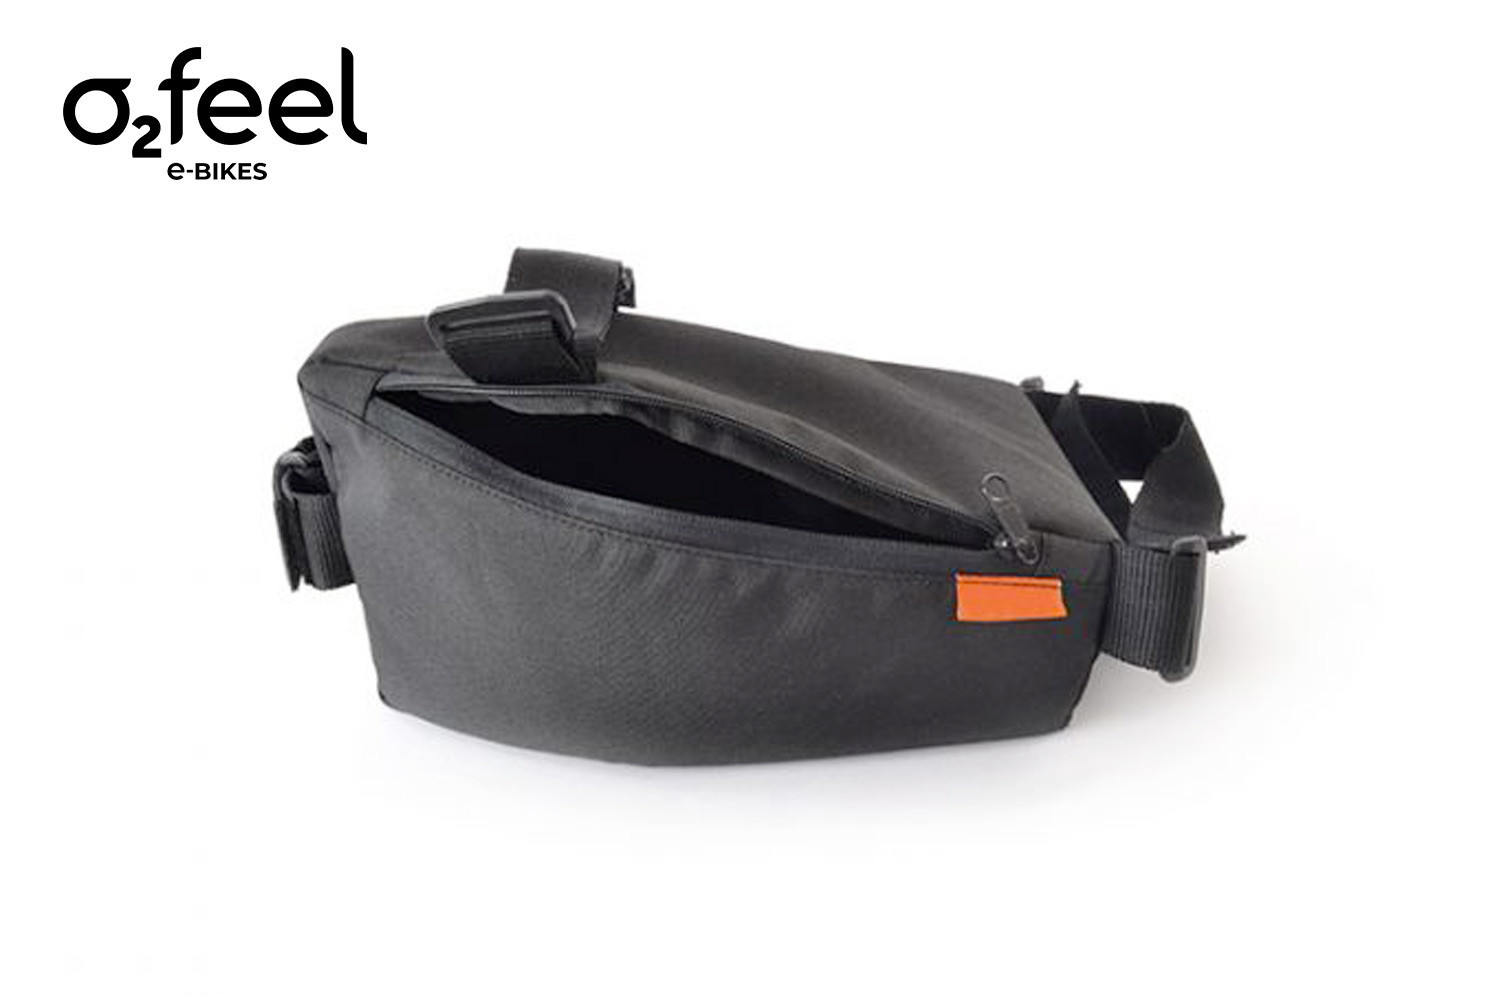 Central Bag O2feel, le sac à scratcher sur le cadre de votre vélo cargo électrique.